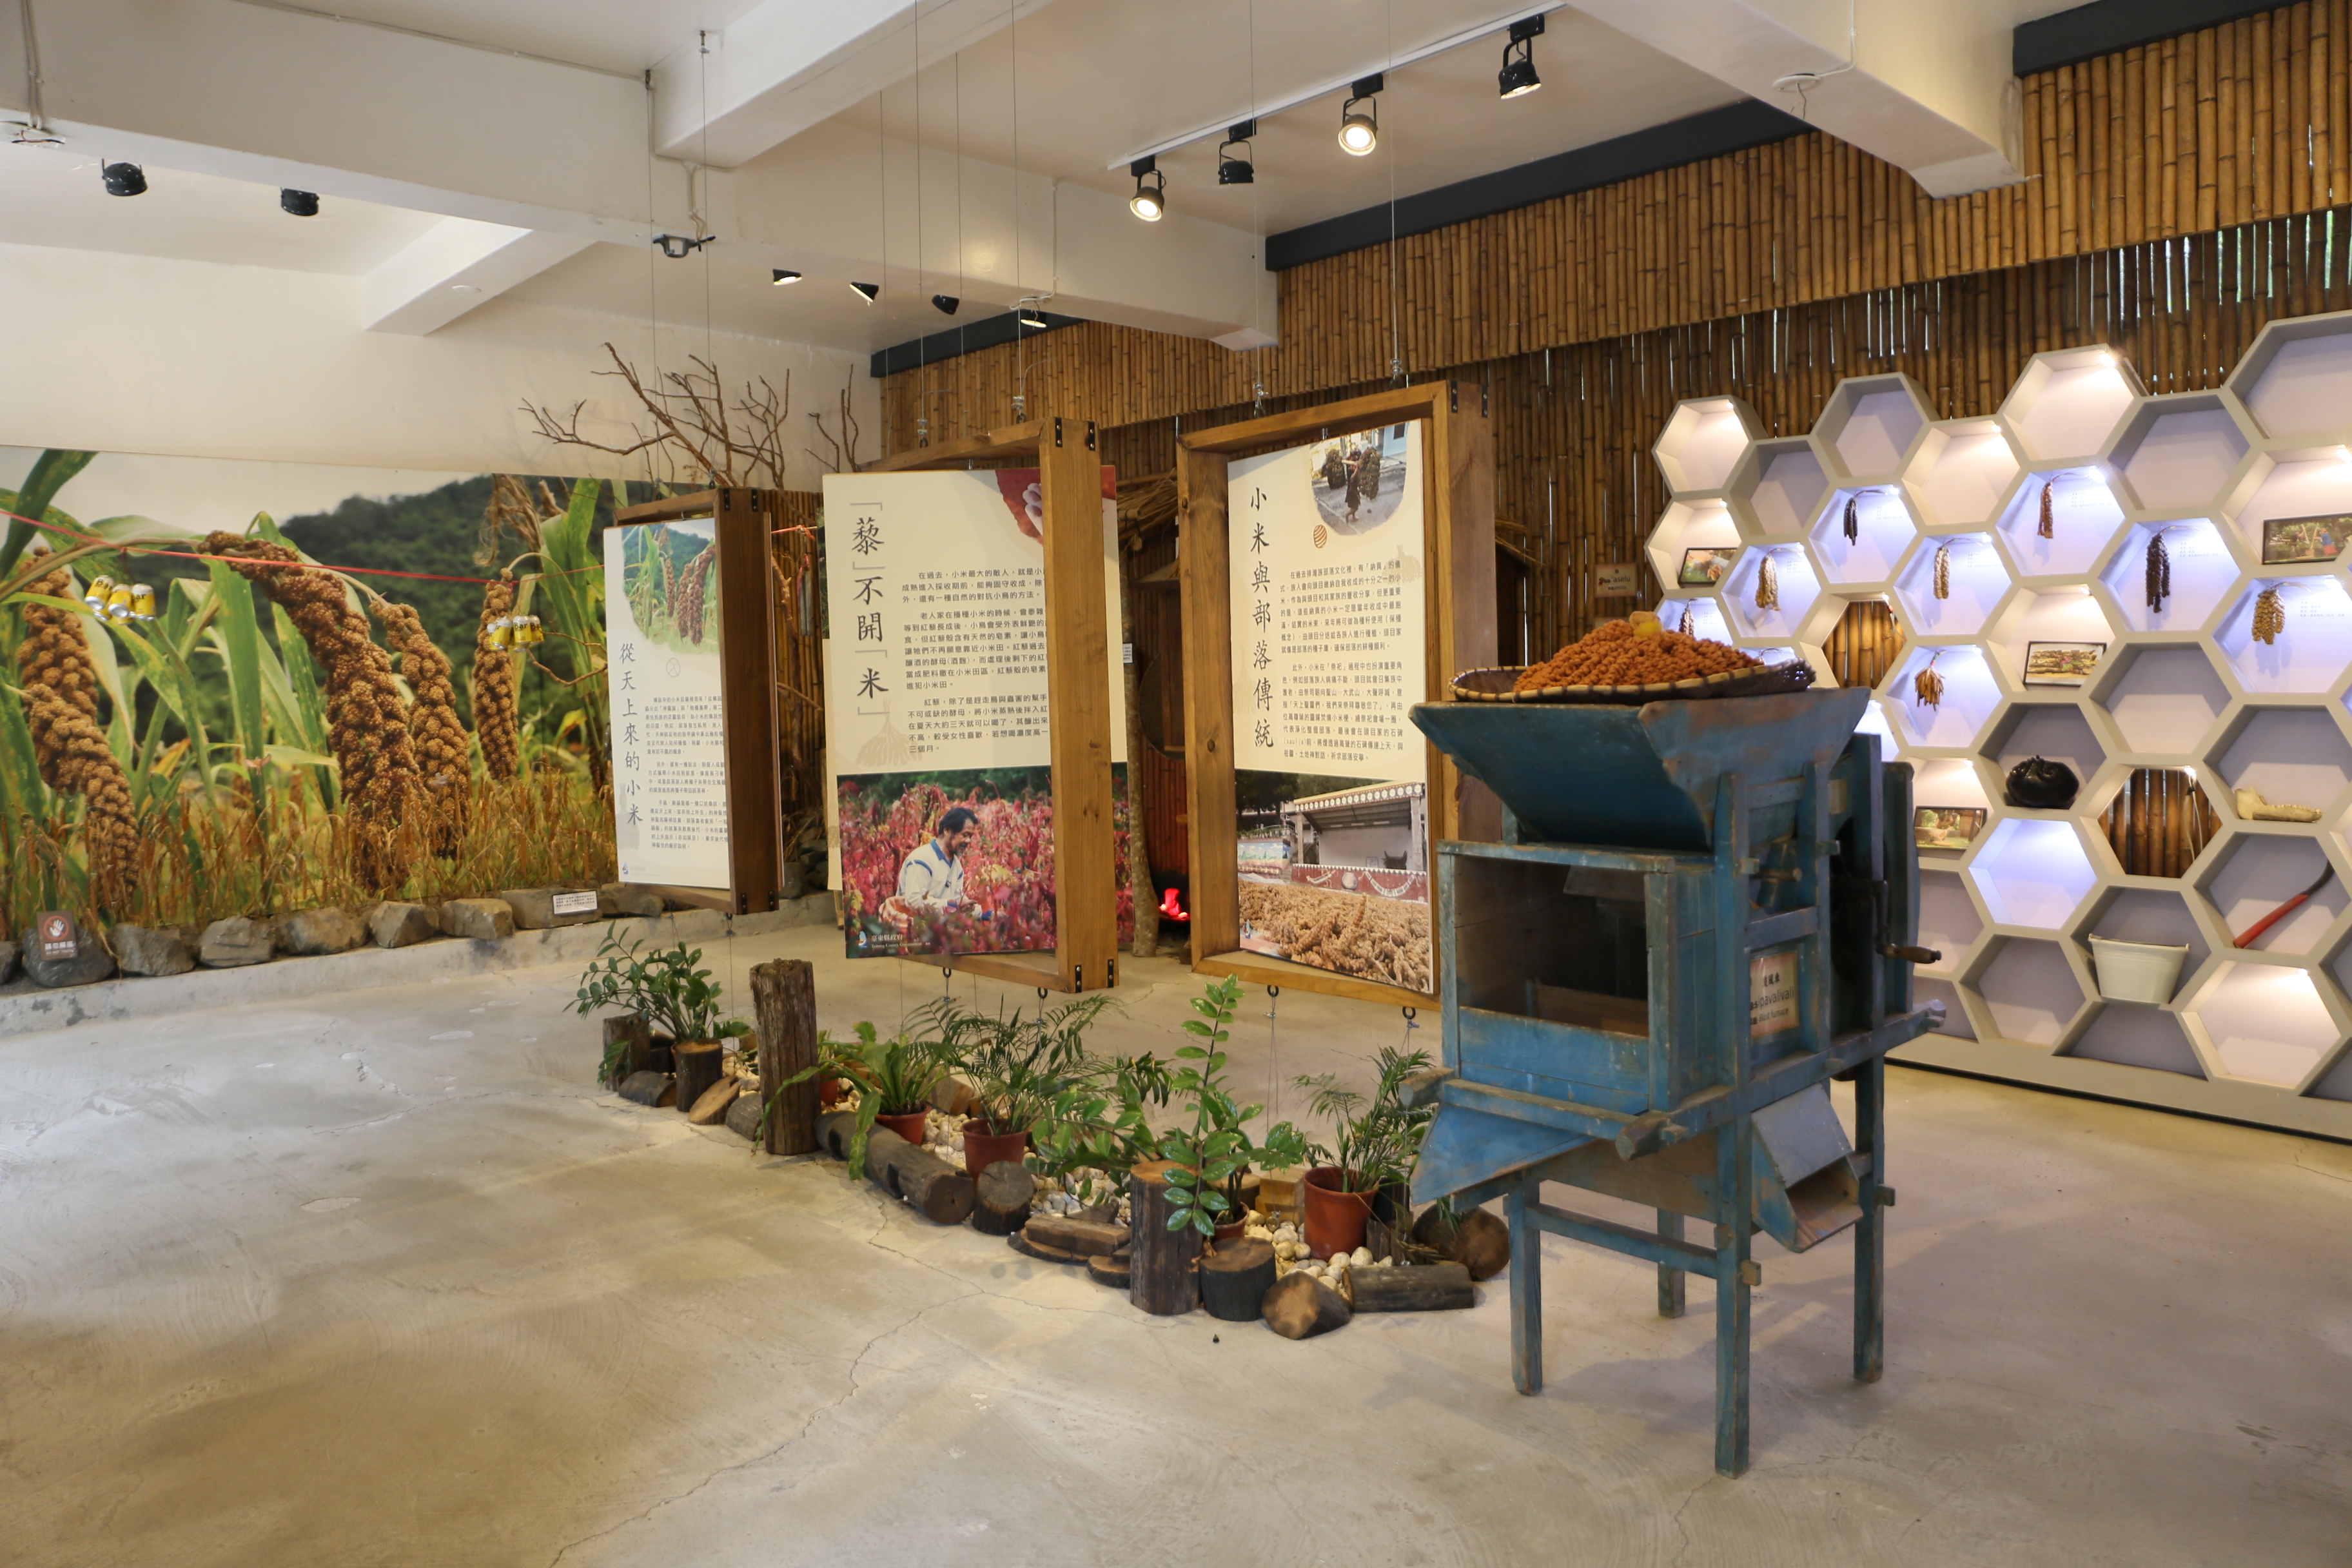 故事館中展示小米的文化故事、品種、種植方式⋯⋯等等的小米知識。